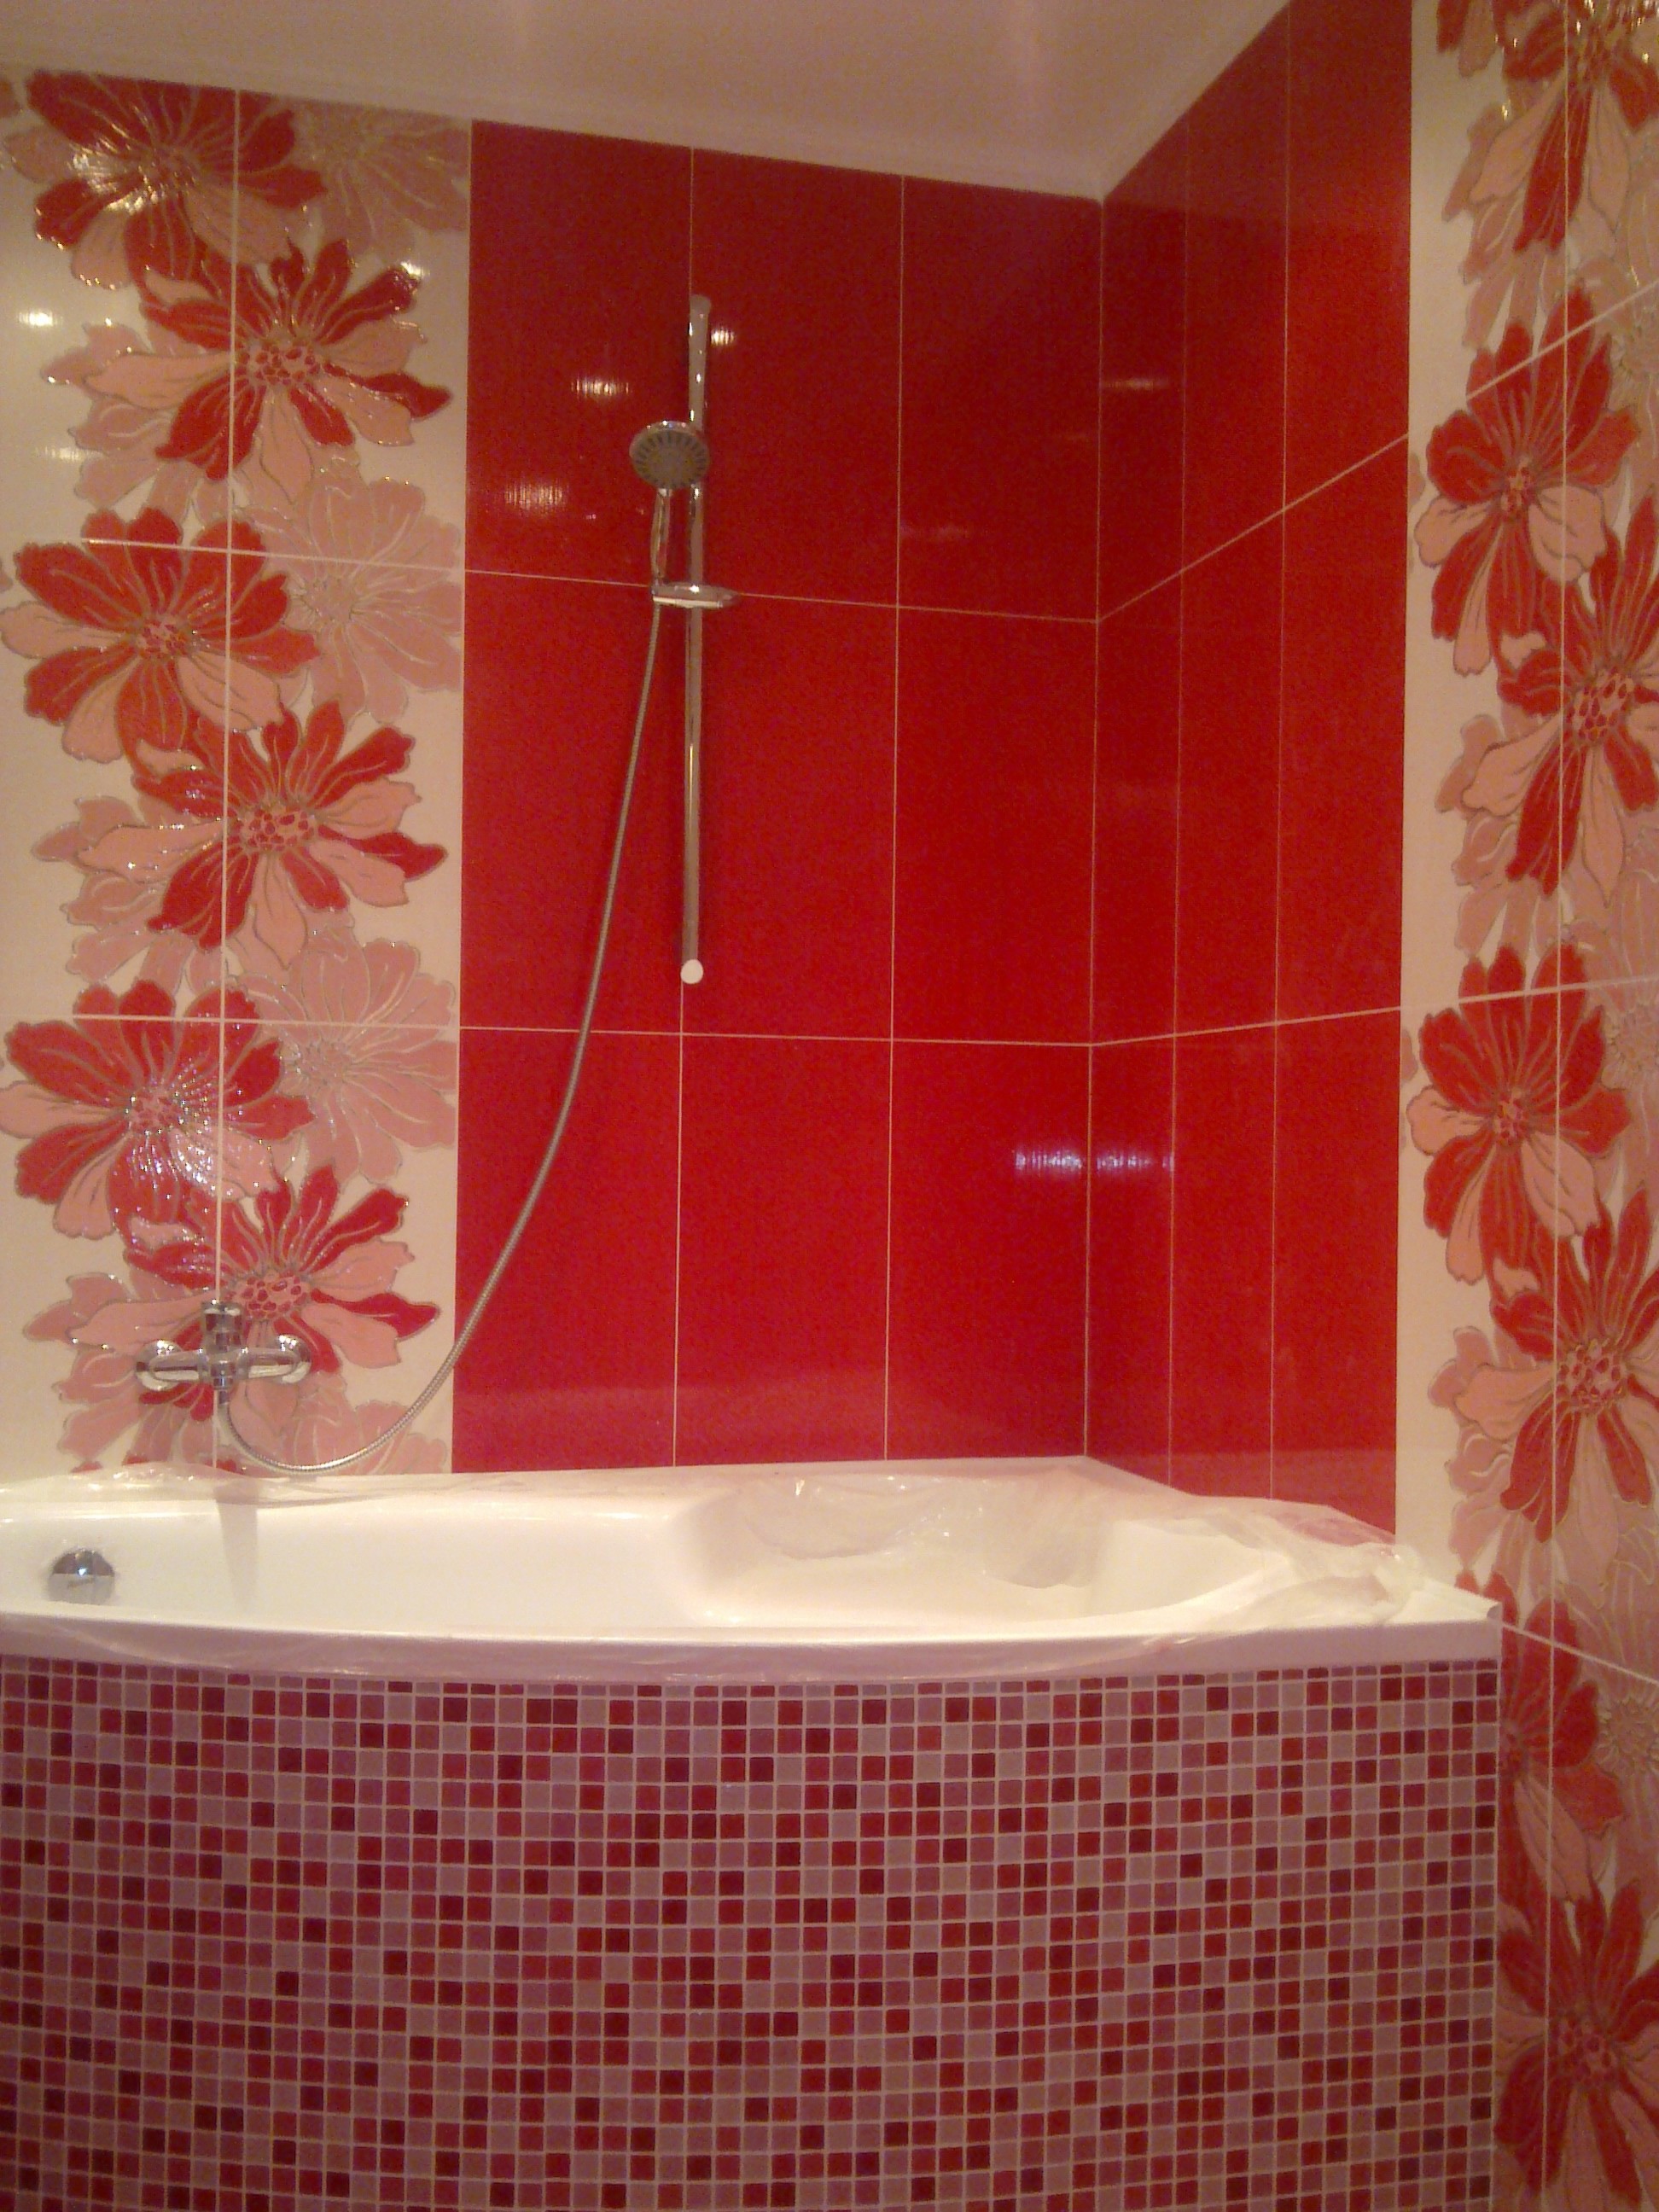 Плитка для ванной комнаты фото киев » Картинки и фотографии дизайна .